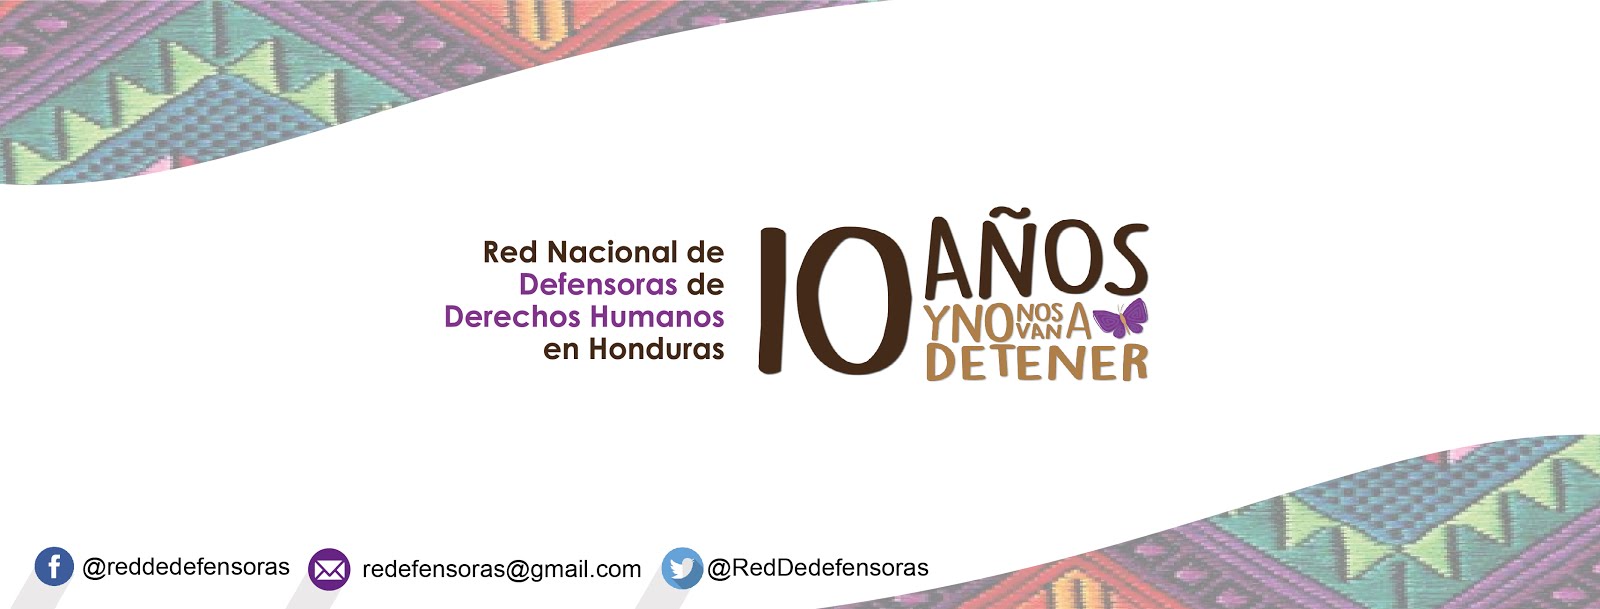 Red Nacional de Defensoras de Derechos Humanos en Honduras